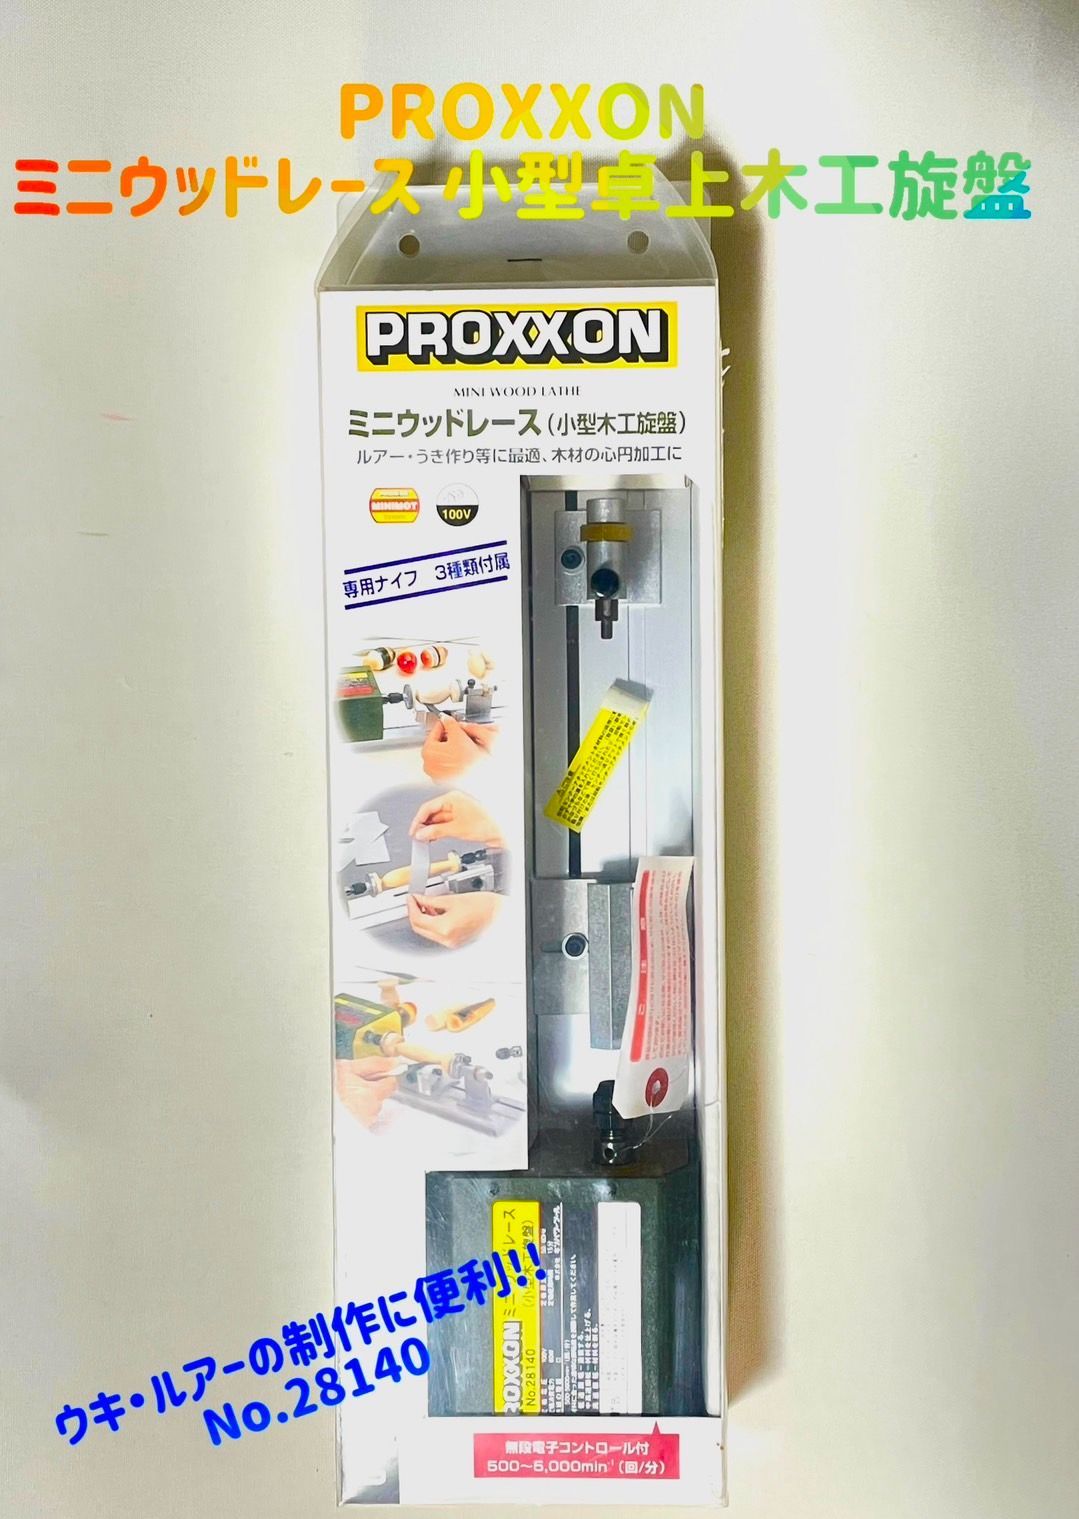 プロクソン(PROXXON) ミニウッドレース 小型卓上木工旋盤 ウキ・ルアーの制作に便利 No.28140 - 2